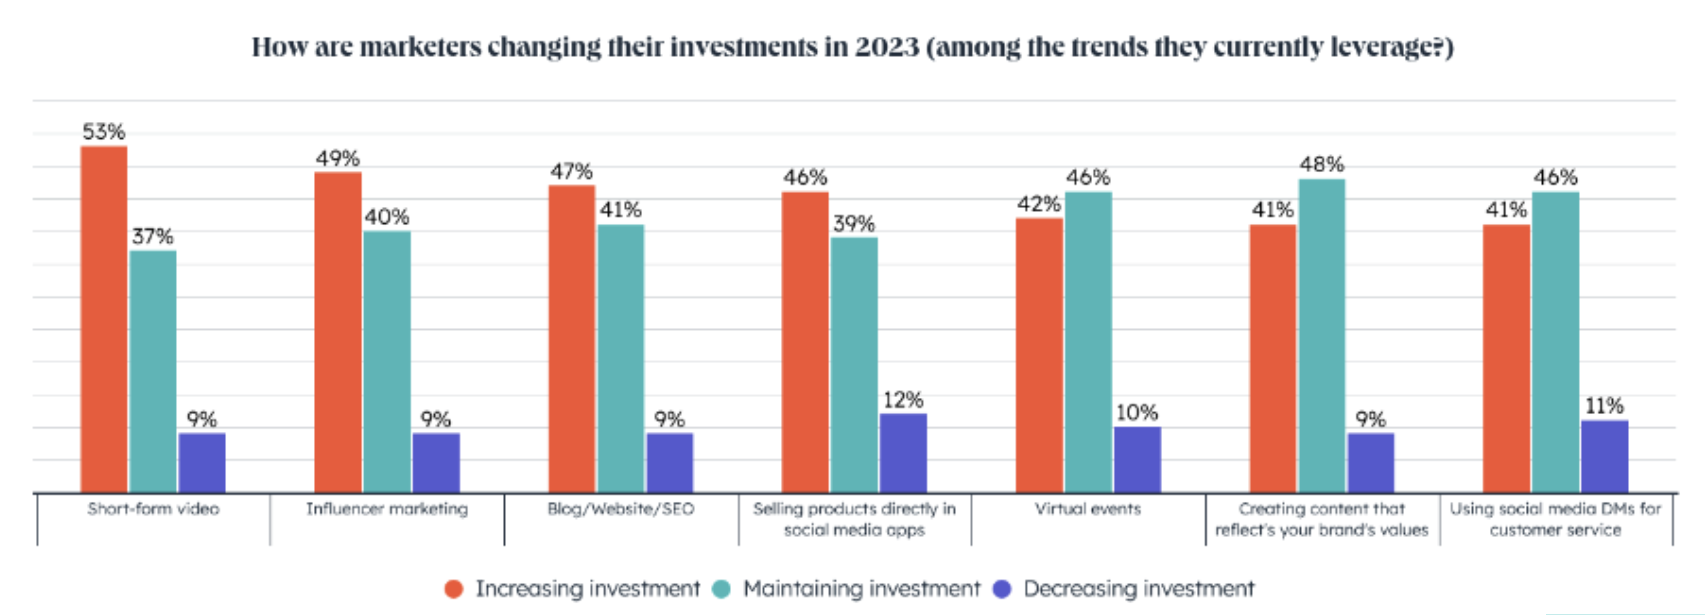 График, который показывает, как маркетологи изменят свои инвестиции в 2023 году, и создание контента, который показывает их ценности, является одной из инвестиций. 